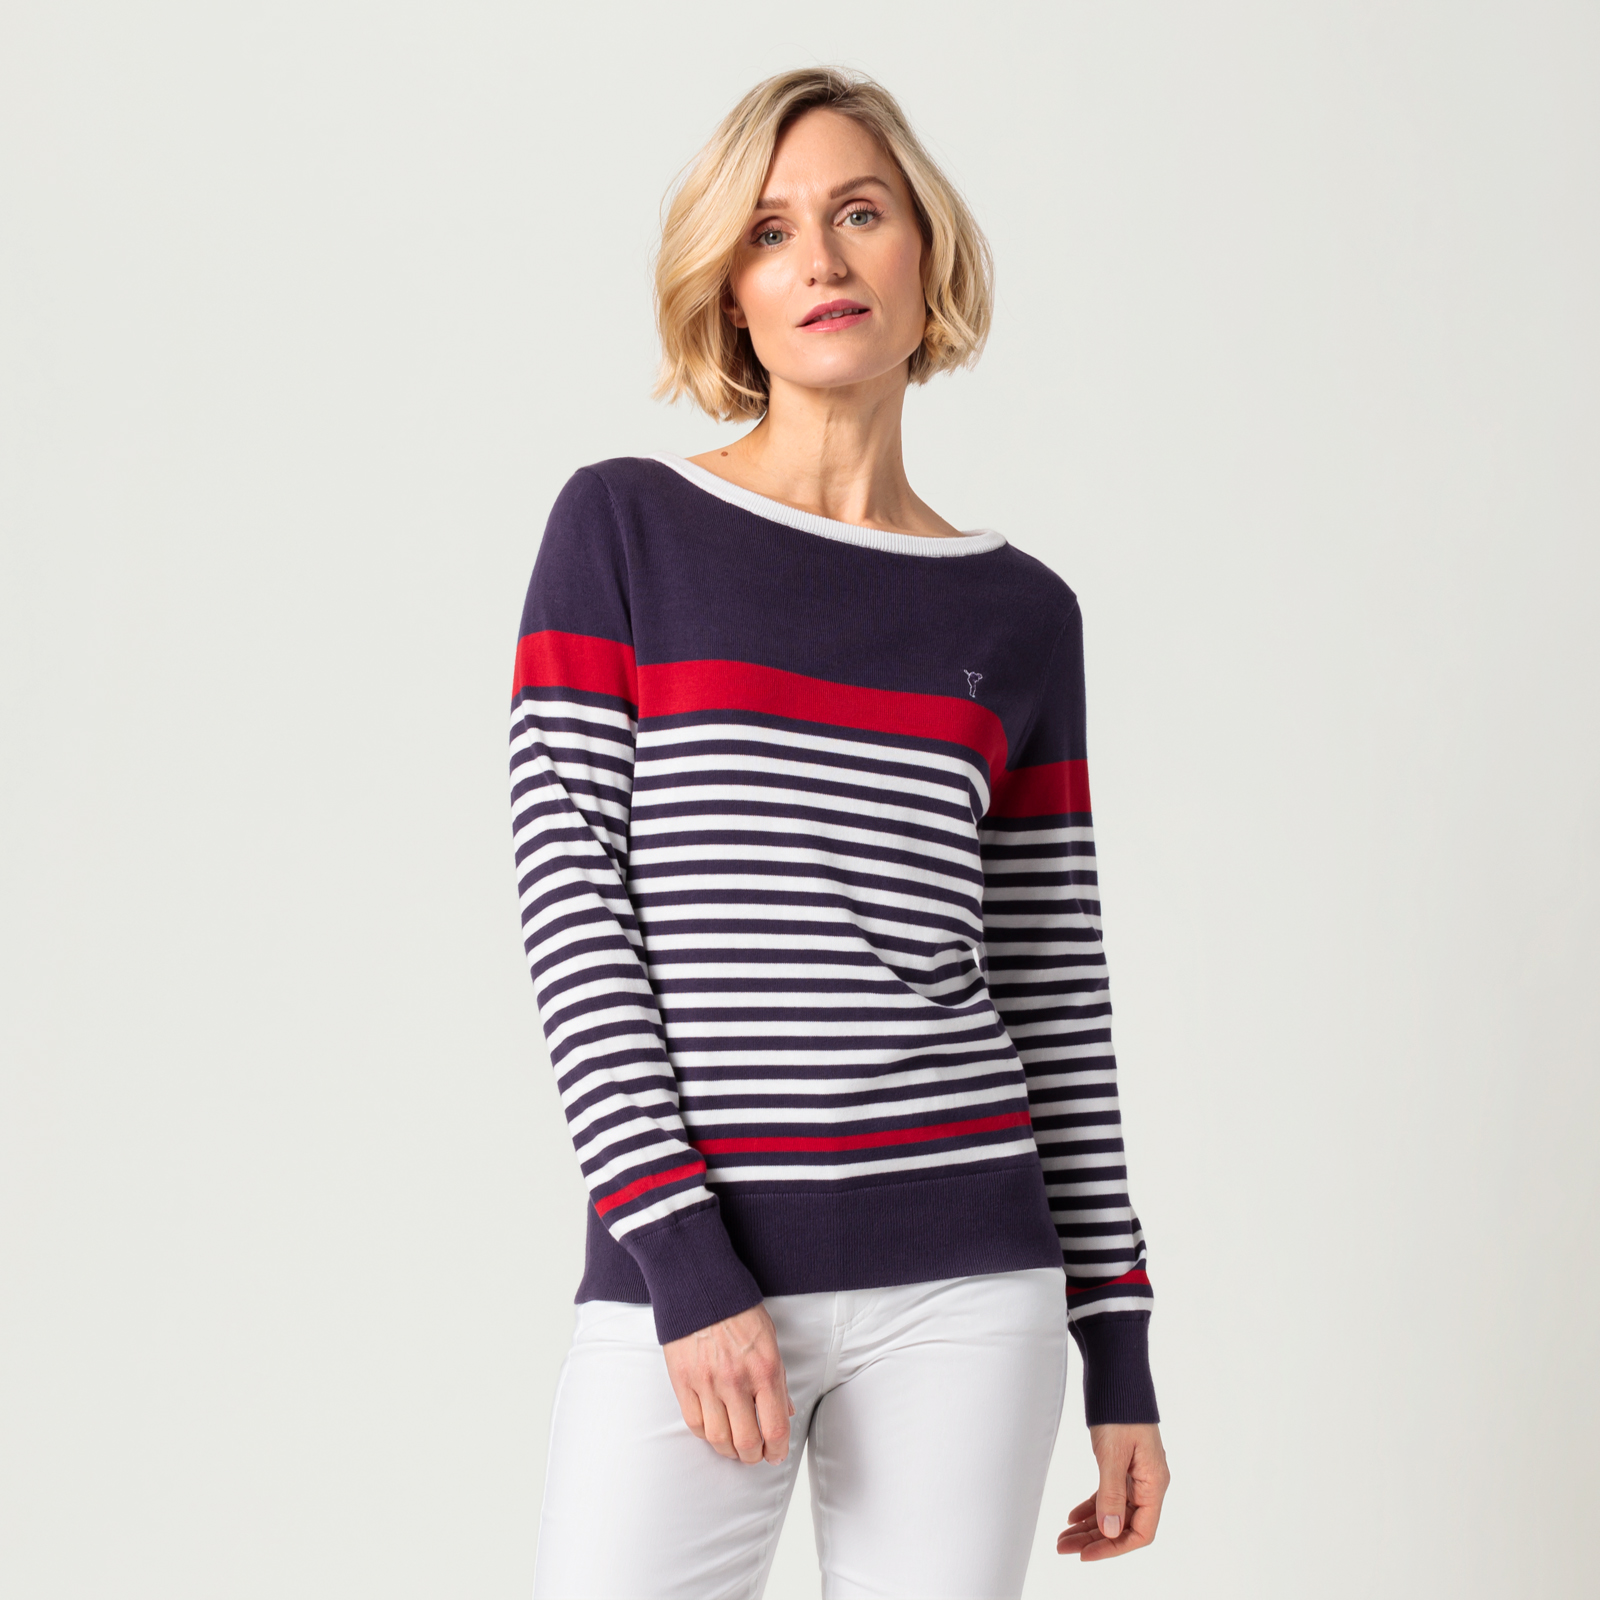 Golf Pullover für Damen aus Pima Baumwolle in Streifenoptik